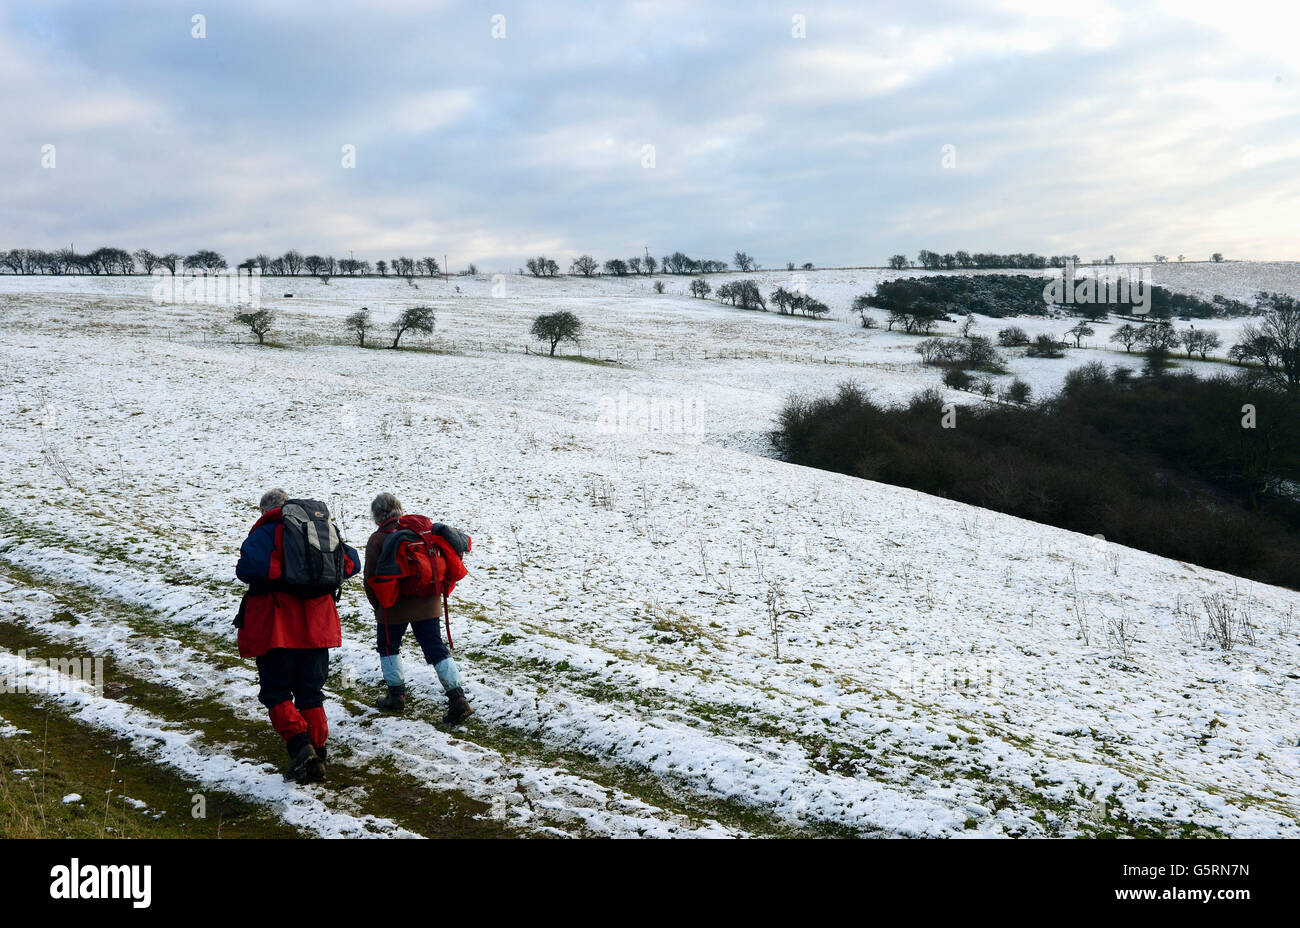 Schnee auf dem Hochboden der Yorkshire Wolds bei Millington Almen, nahe Pocklington, gibt Wanderern einen Vorgeschmack auf das Winterwetter und Schnee, die in den kommenden Tagen viele Gebiete Großbritanniens beeinflussen werden. Stockfoto